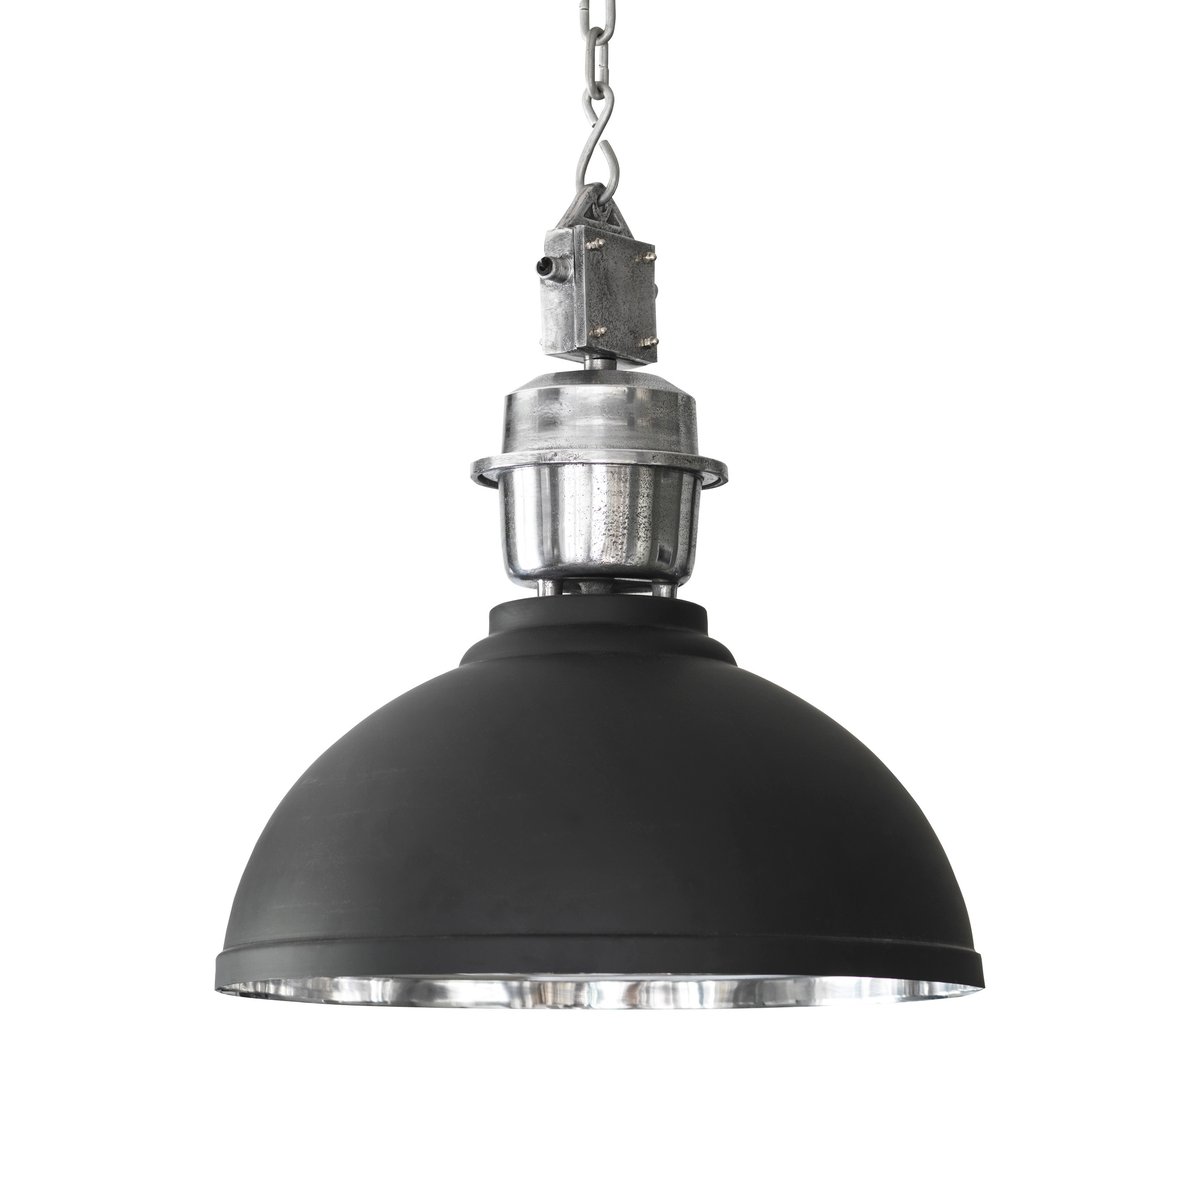 PR Home Manchester plafondlamp, Ø 35 cm Zwart-zilver